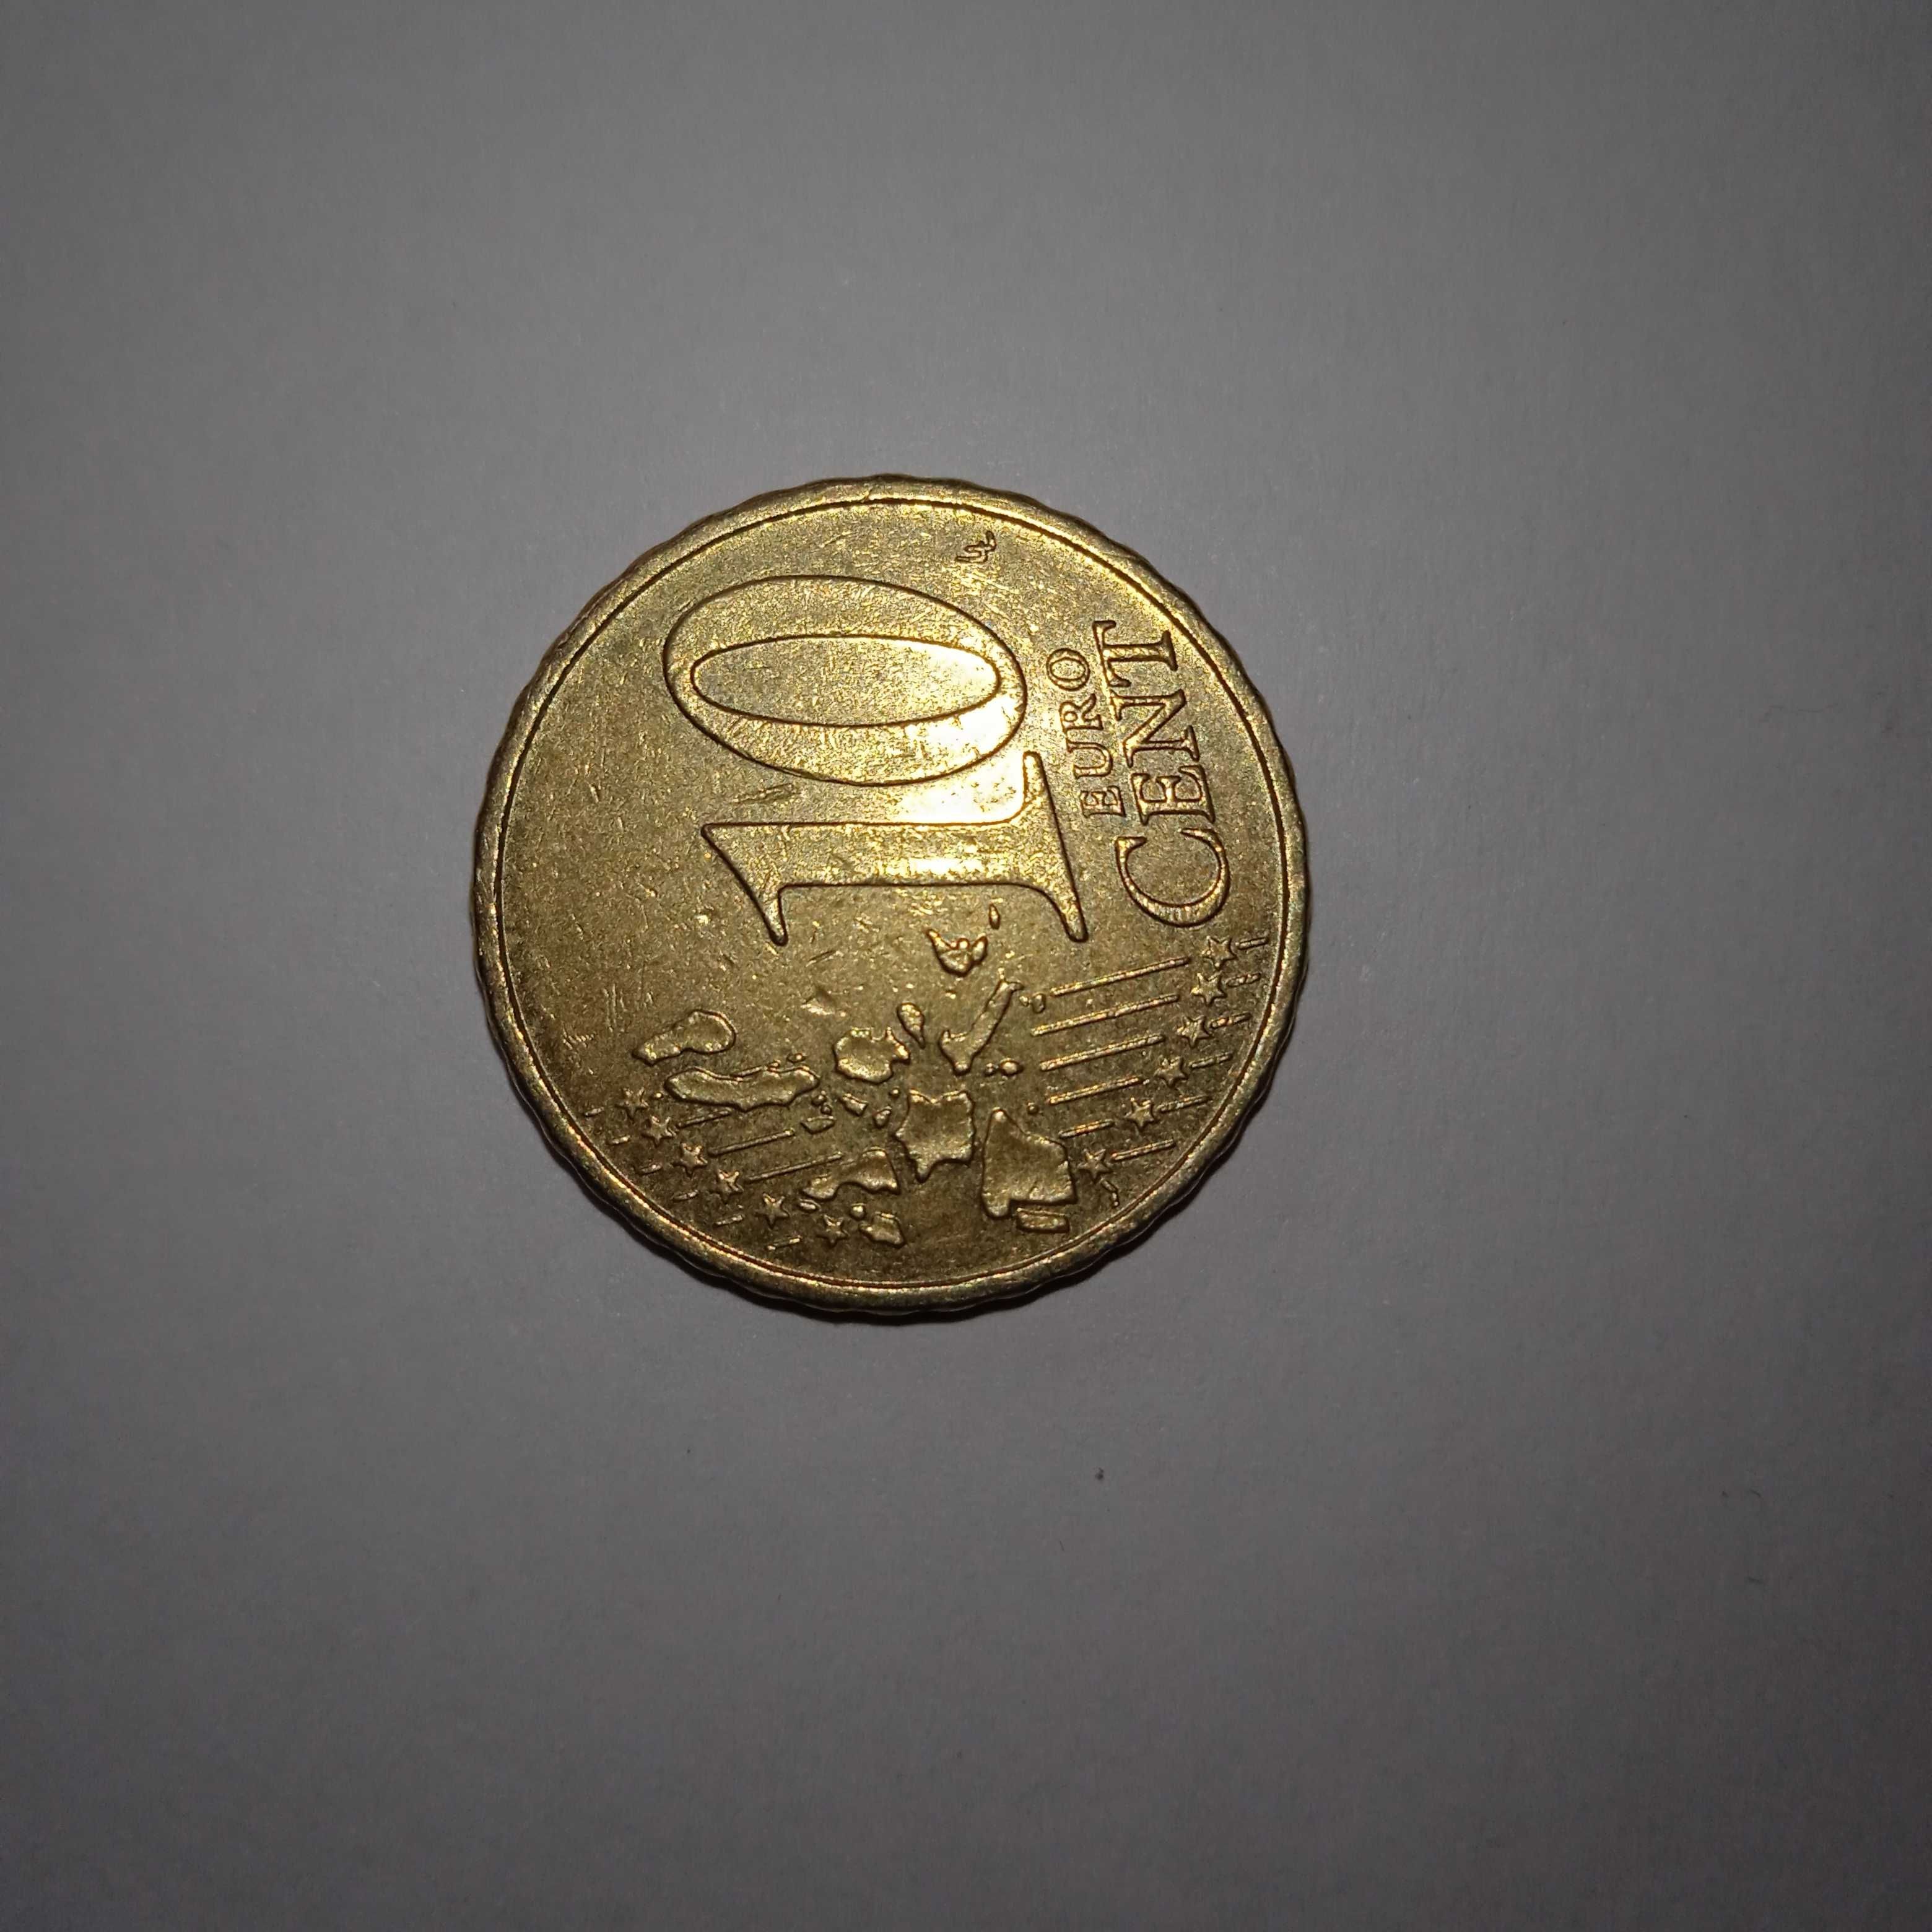 Vendo moedas raras de 10 centimos 2002 Alemanha